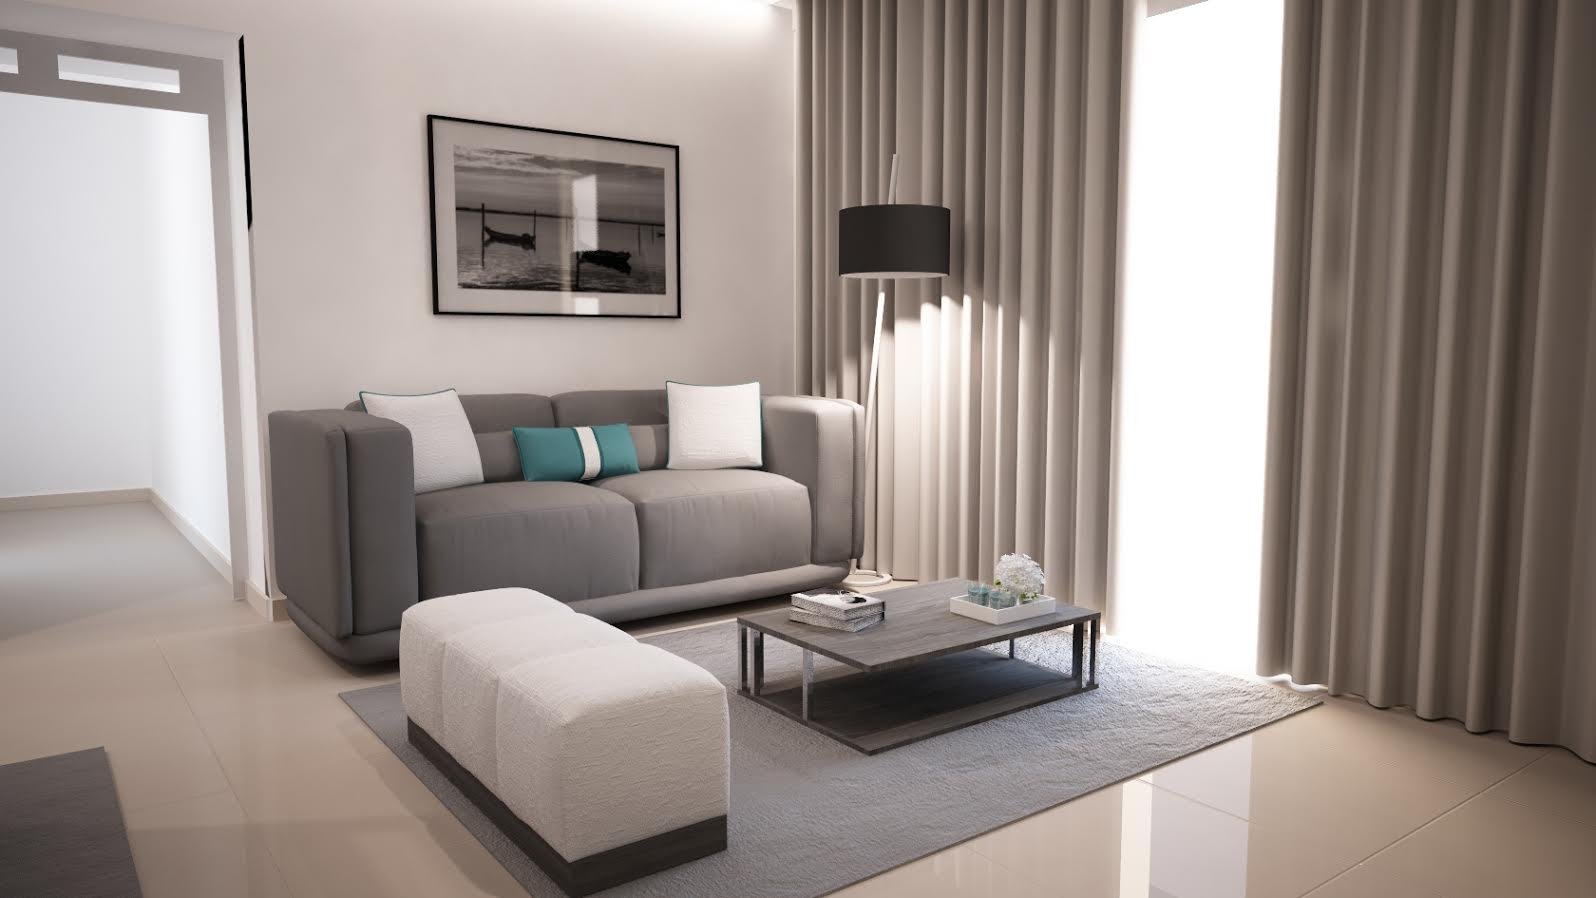 Ângela Pinheiro - Decoração de Interiores - Home Design - Decoração de Interiores - Sala Black and White